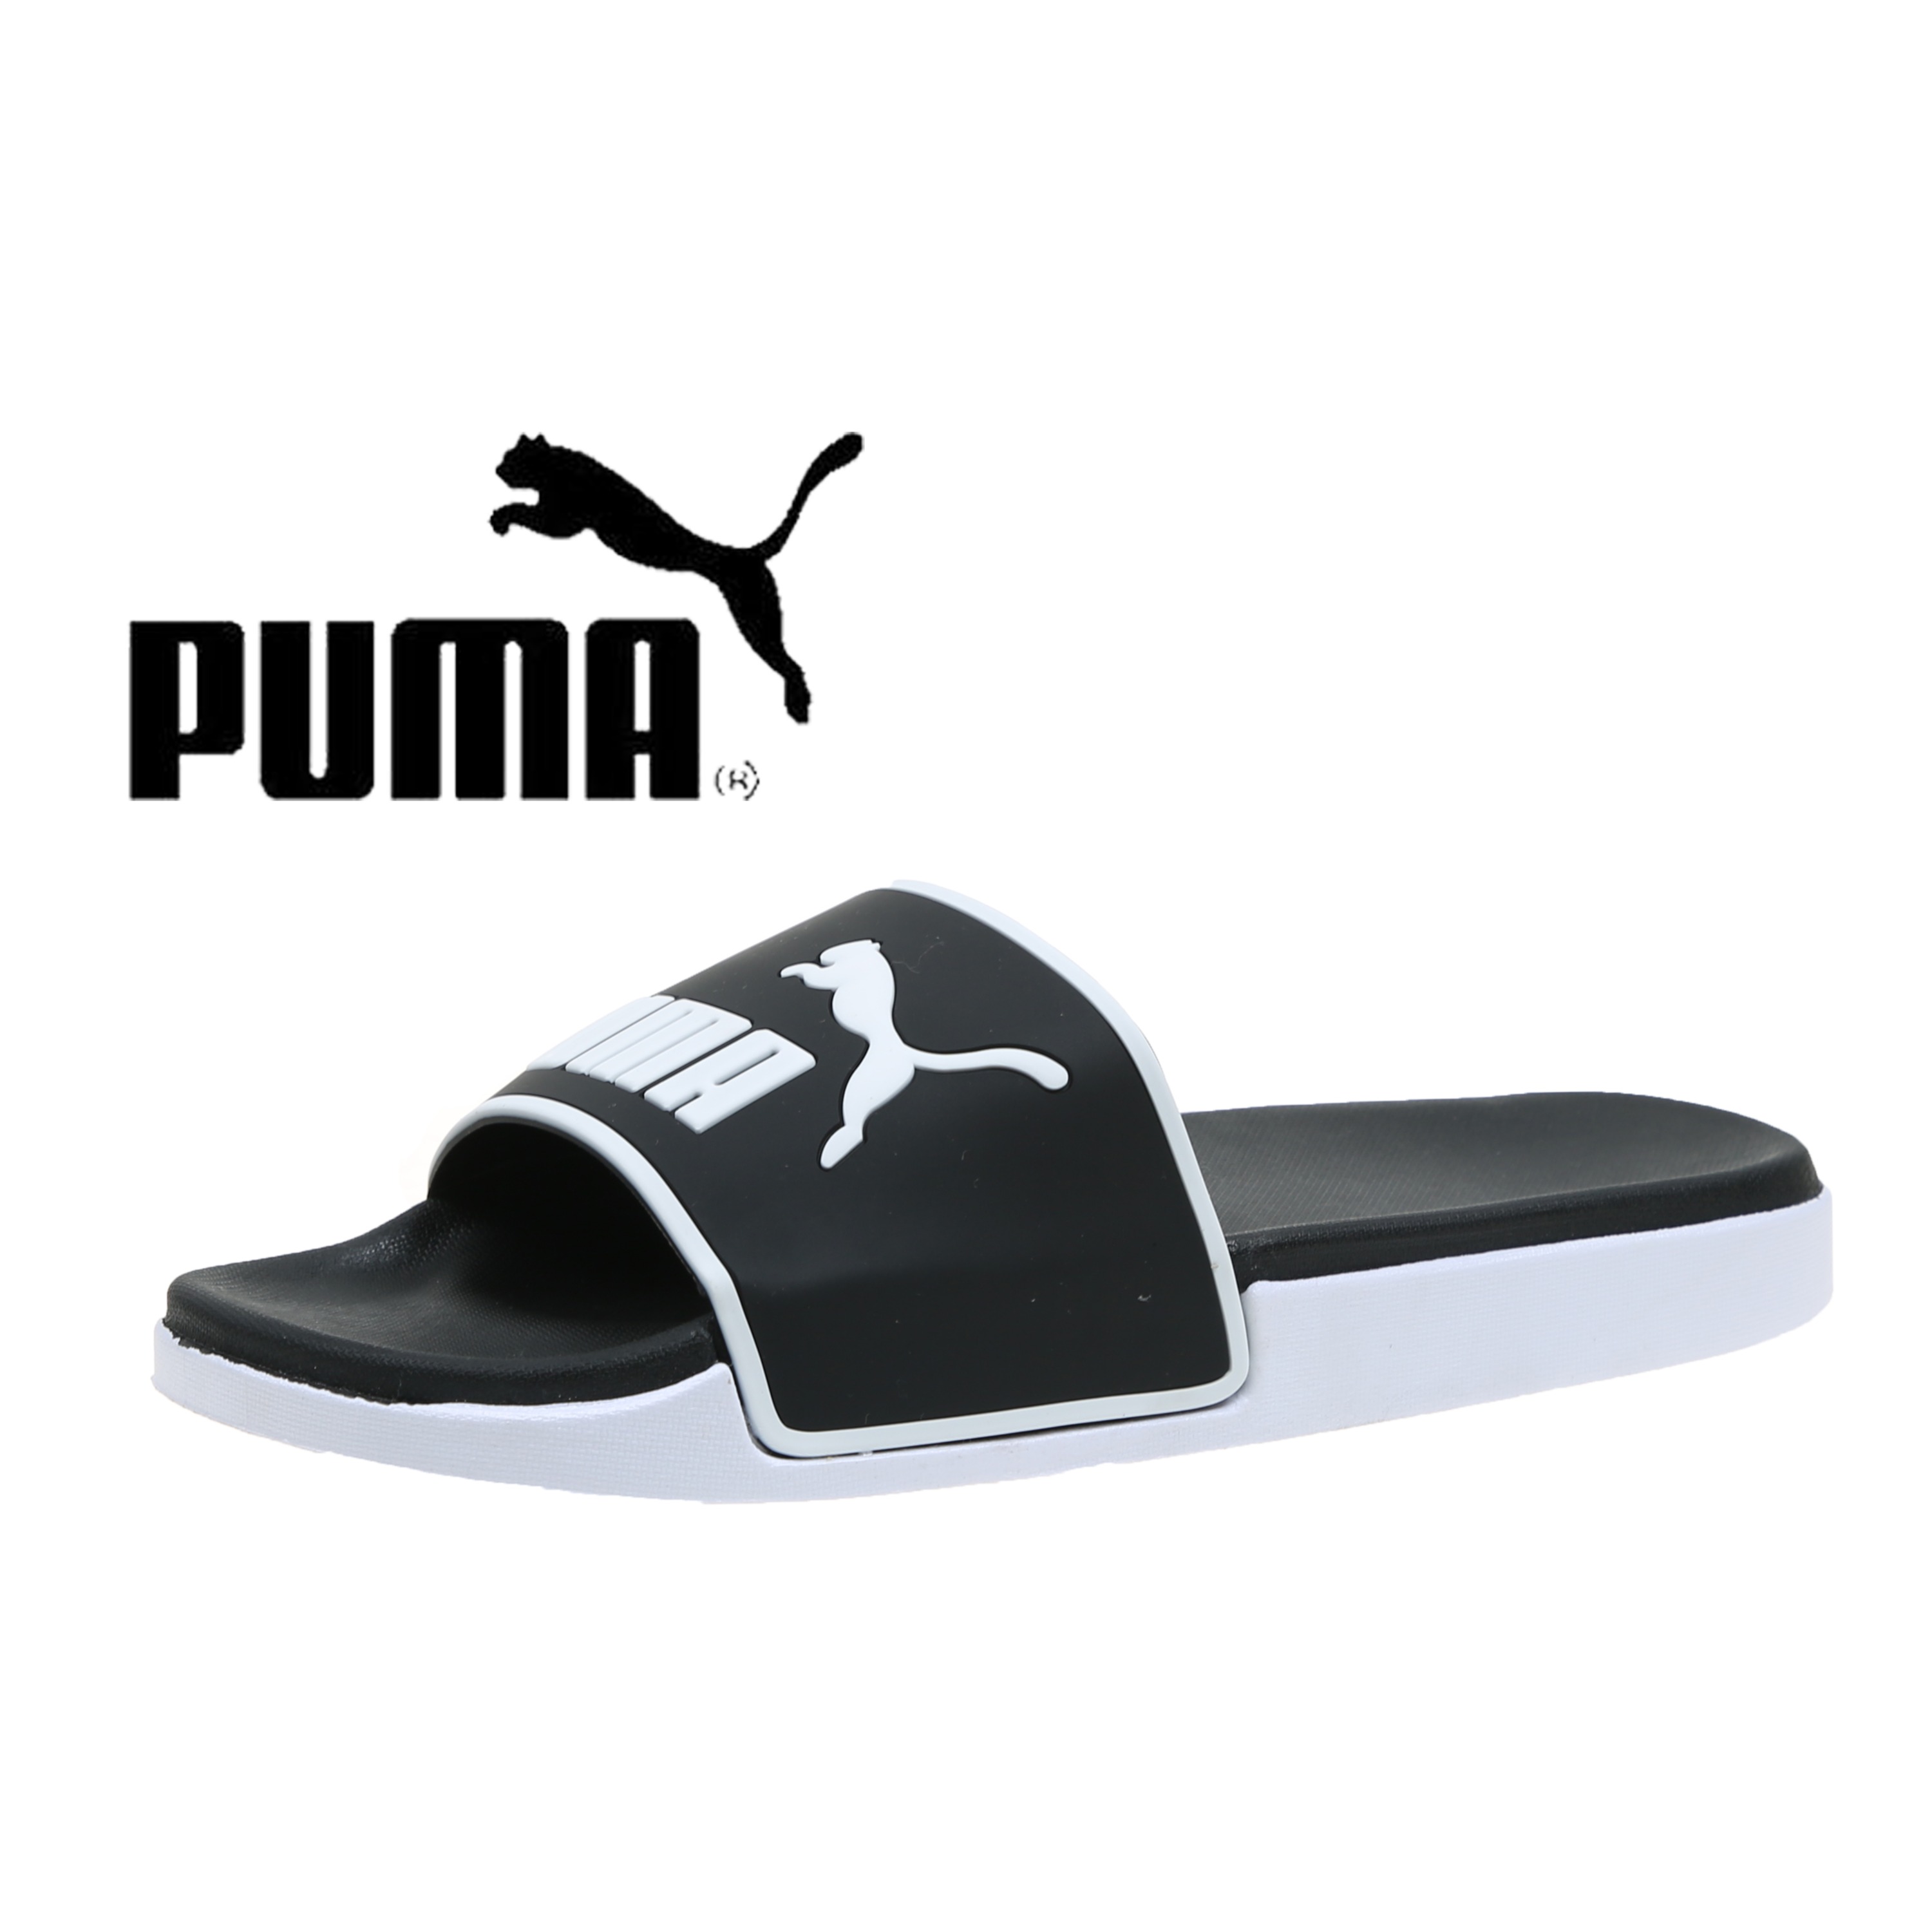 Puma (พูม่า) รองเท้าแตะแบบสวน รุ่น 022（แนะนำสั่งเพิ่ม 1 เบอร์คะ）